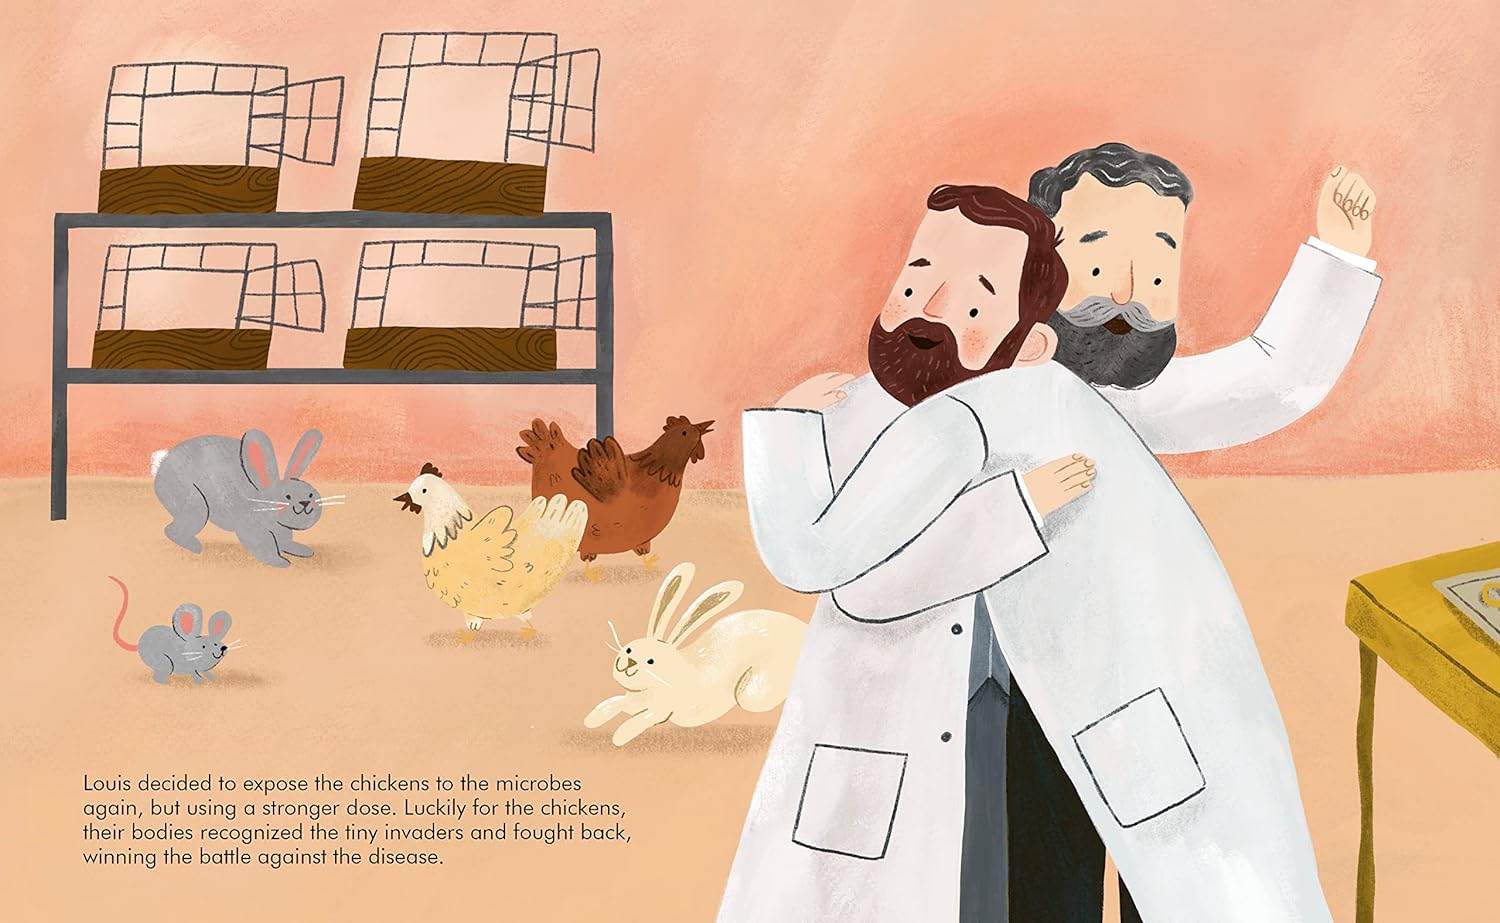 Little People, Big Dreams: Louis Pasteur